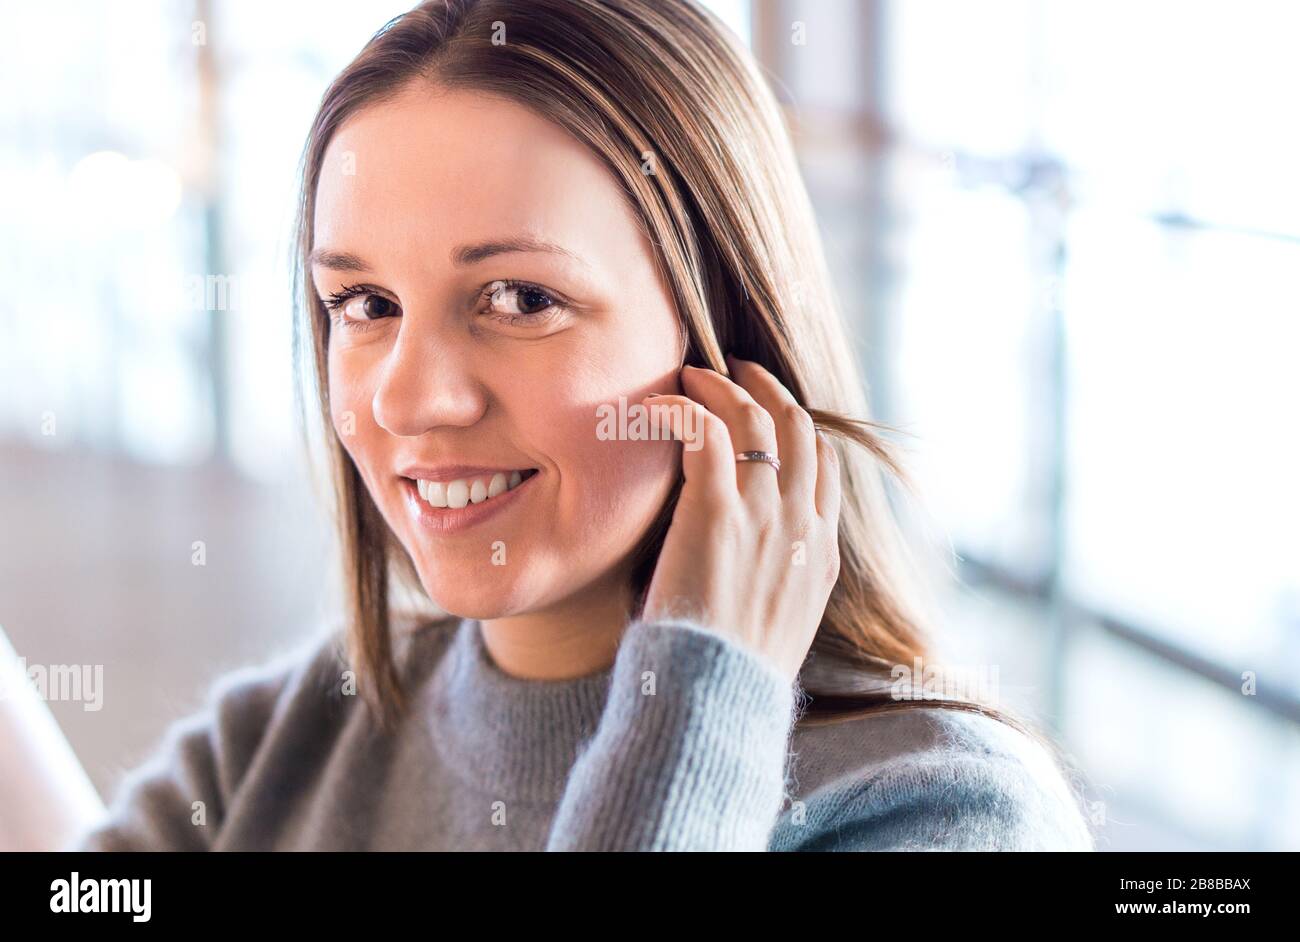 Schöne junge Frau lächelnd und mit der Hand anrührend im modernen Büro- oder Geschäftsgebäude. Glücklicher Mensch, der die Kamera betrachtet. Stockfoto